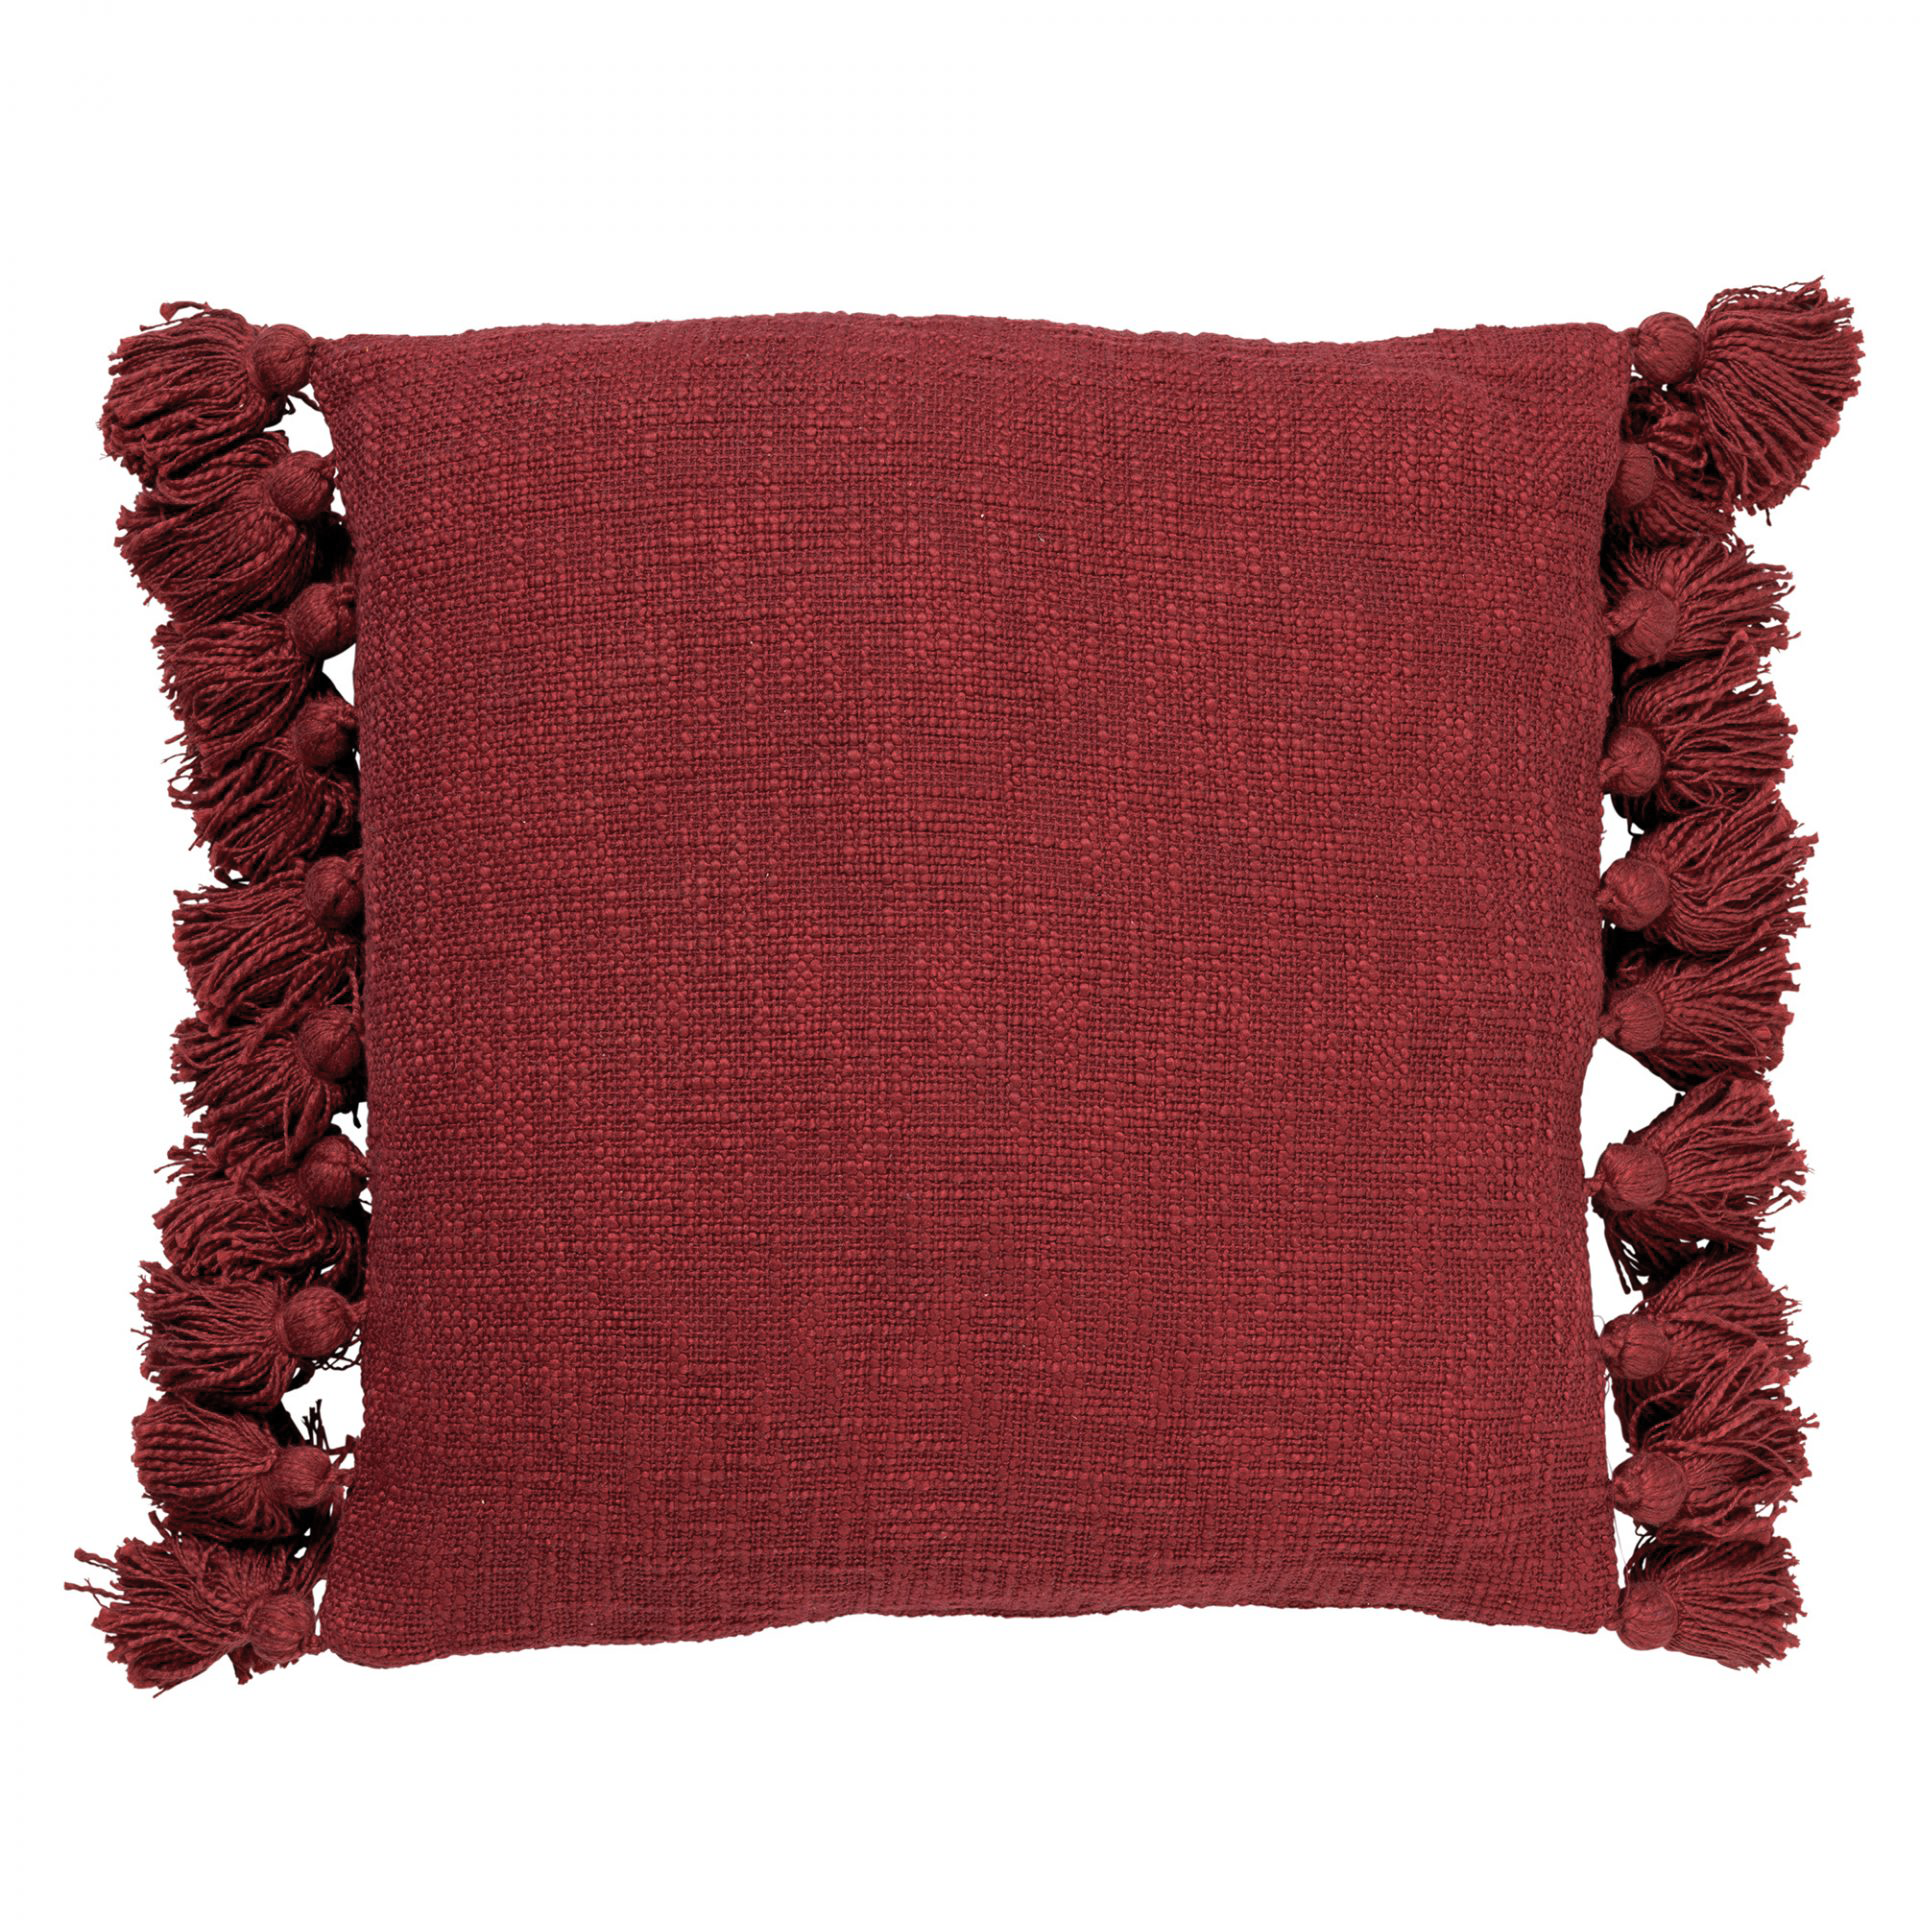 RUBY - Sierkussen katoen 45x45 cm - Merlot - rood - kussentje met flosjes